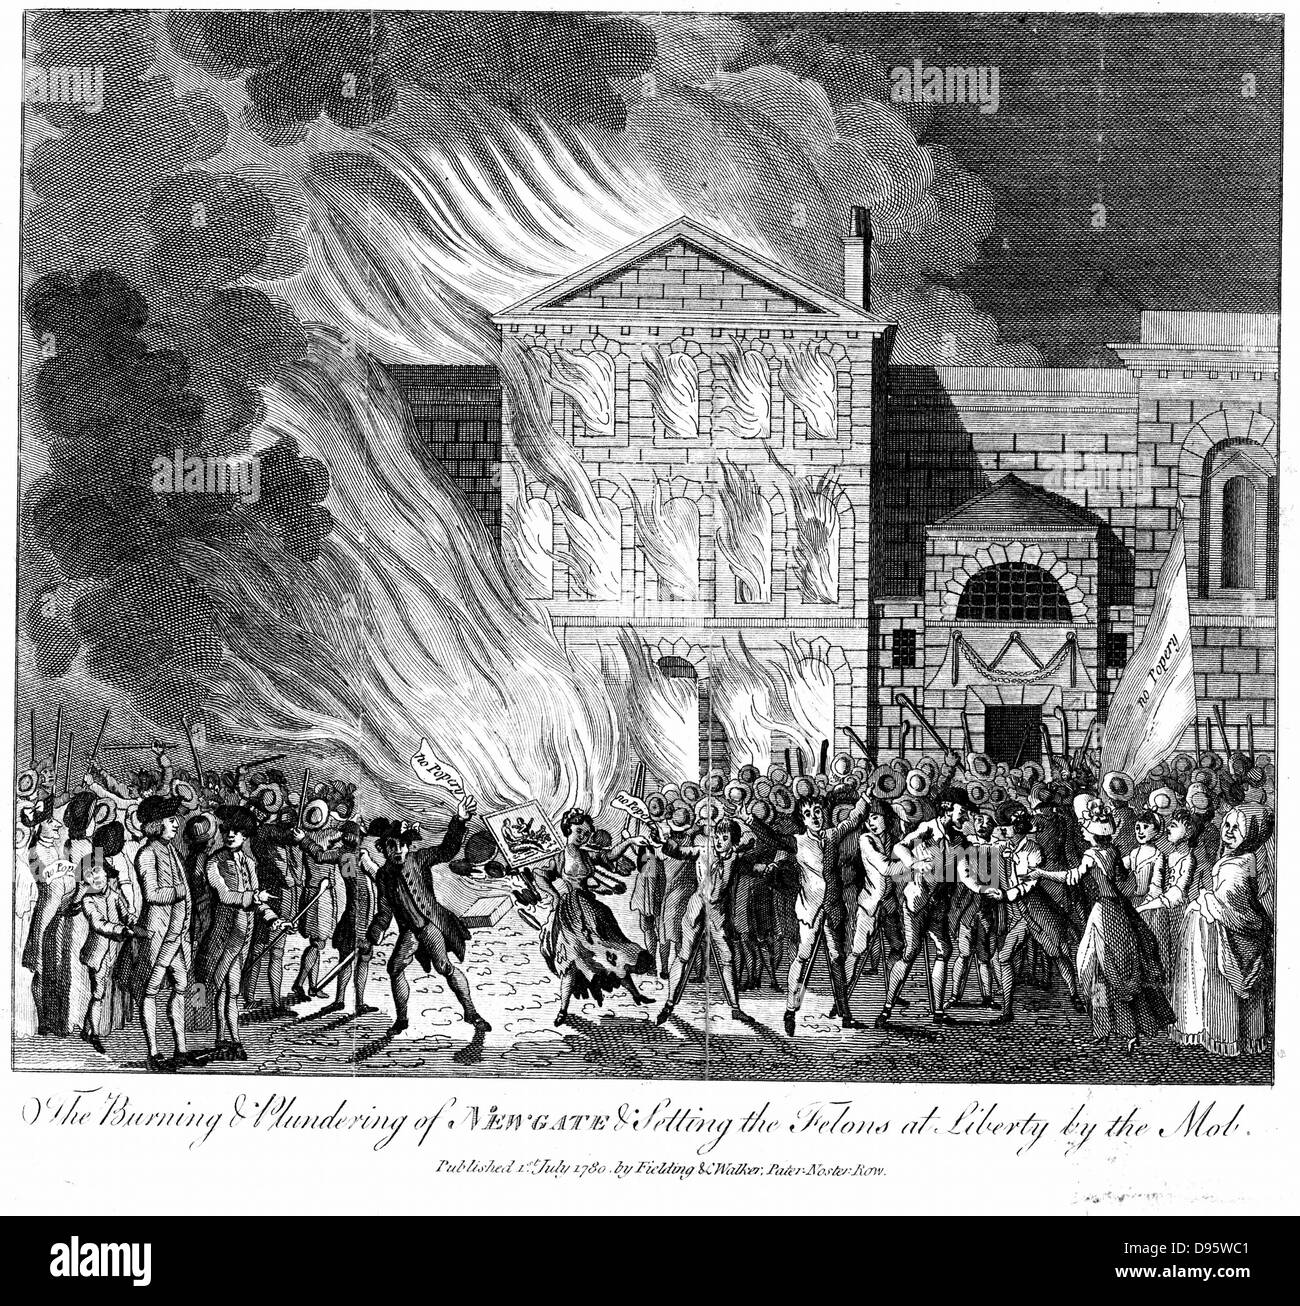 Anti-Catholic Gordon tumulti, Londra. Impostazione Mob fire a Newgate carcere e la liberazione dei prigionieri, 6-7 giugno 1780. Incisione su rame pubblicata il 1 luglio 1780. Foto Stock